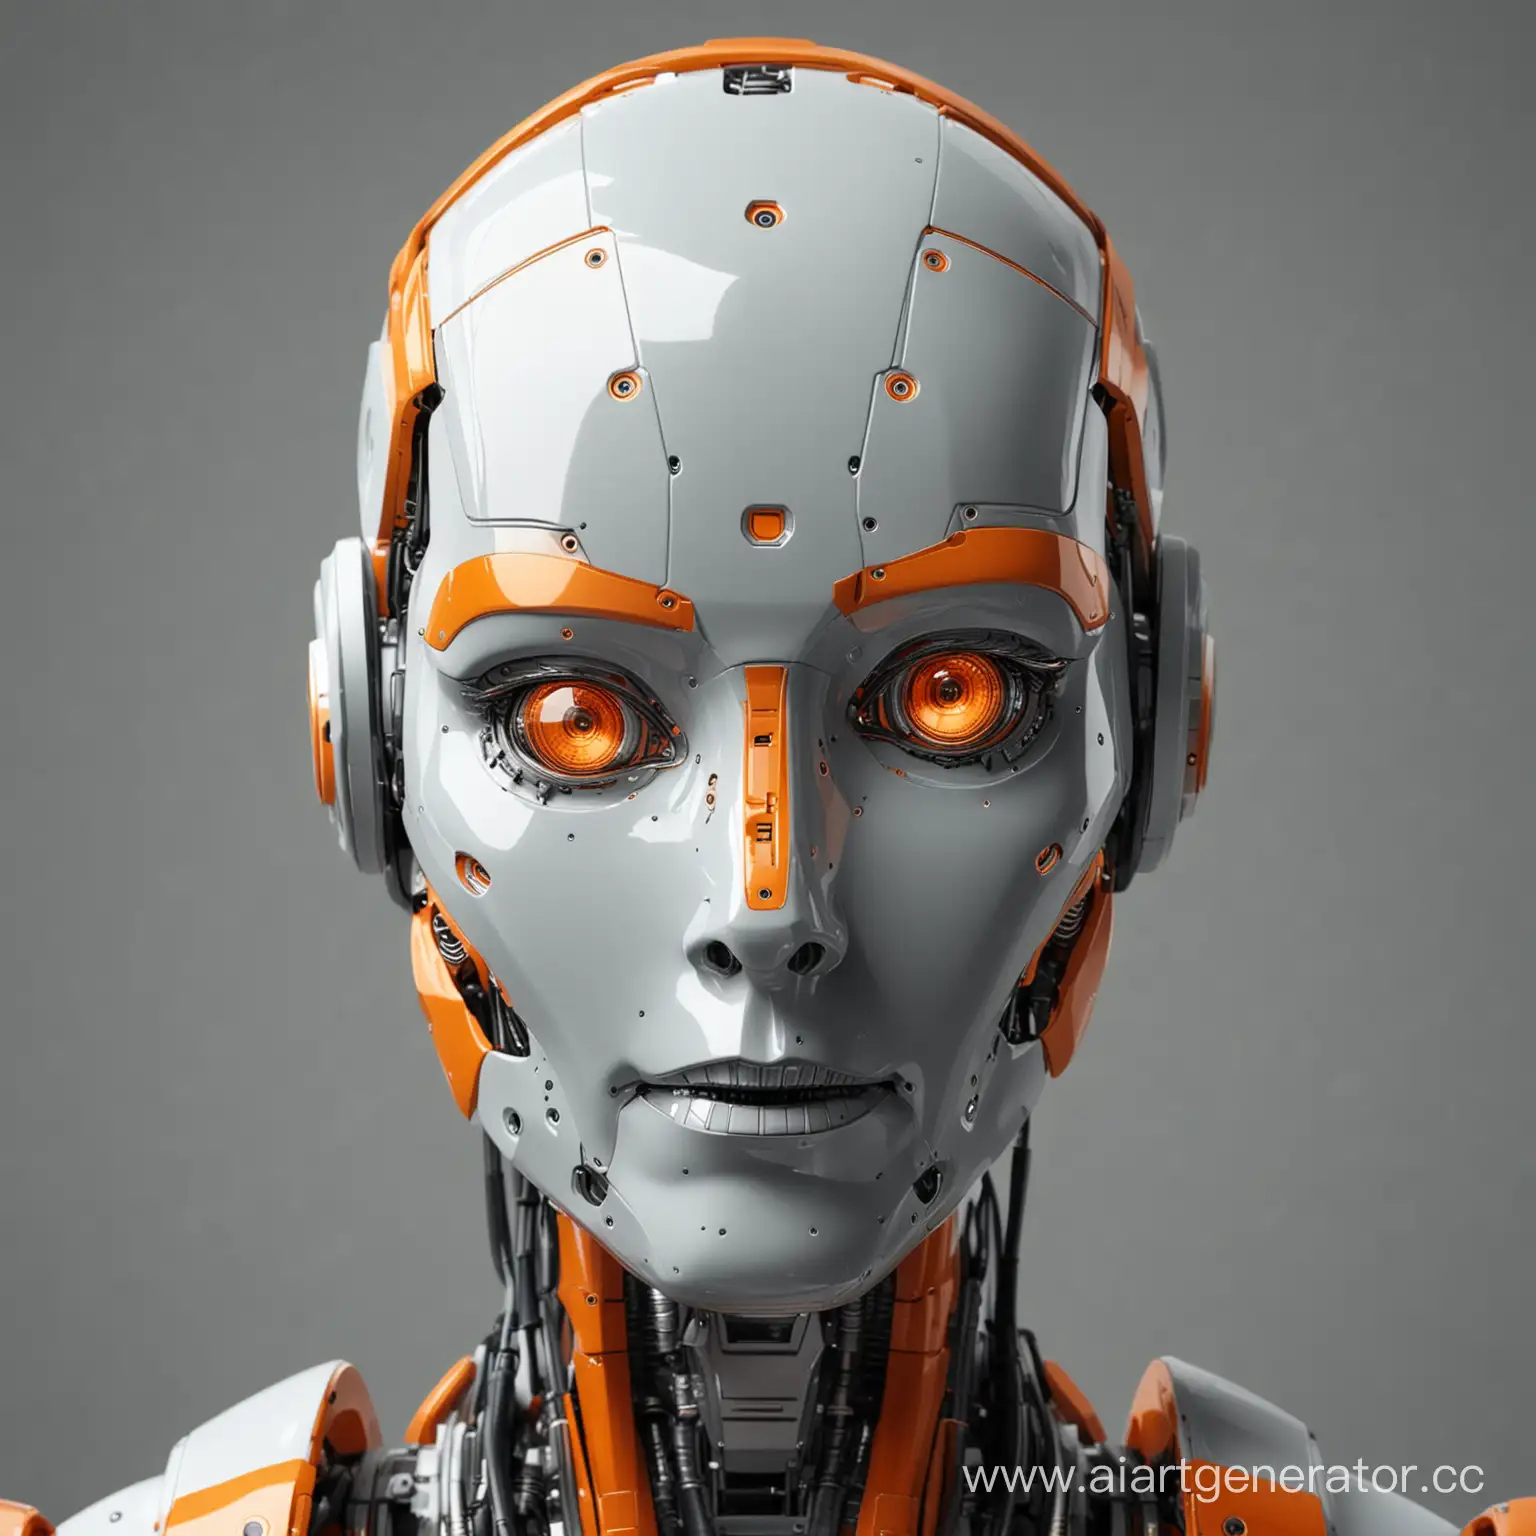 Портрет робота, смотрит прямо, серый фон, робот добрый, добрый взгляд, серый фон, робот портрет, механоид, человеческие черты, красивый, портрет, робот серого цвета с элементами оранжевого цвета